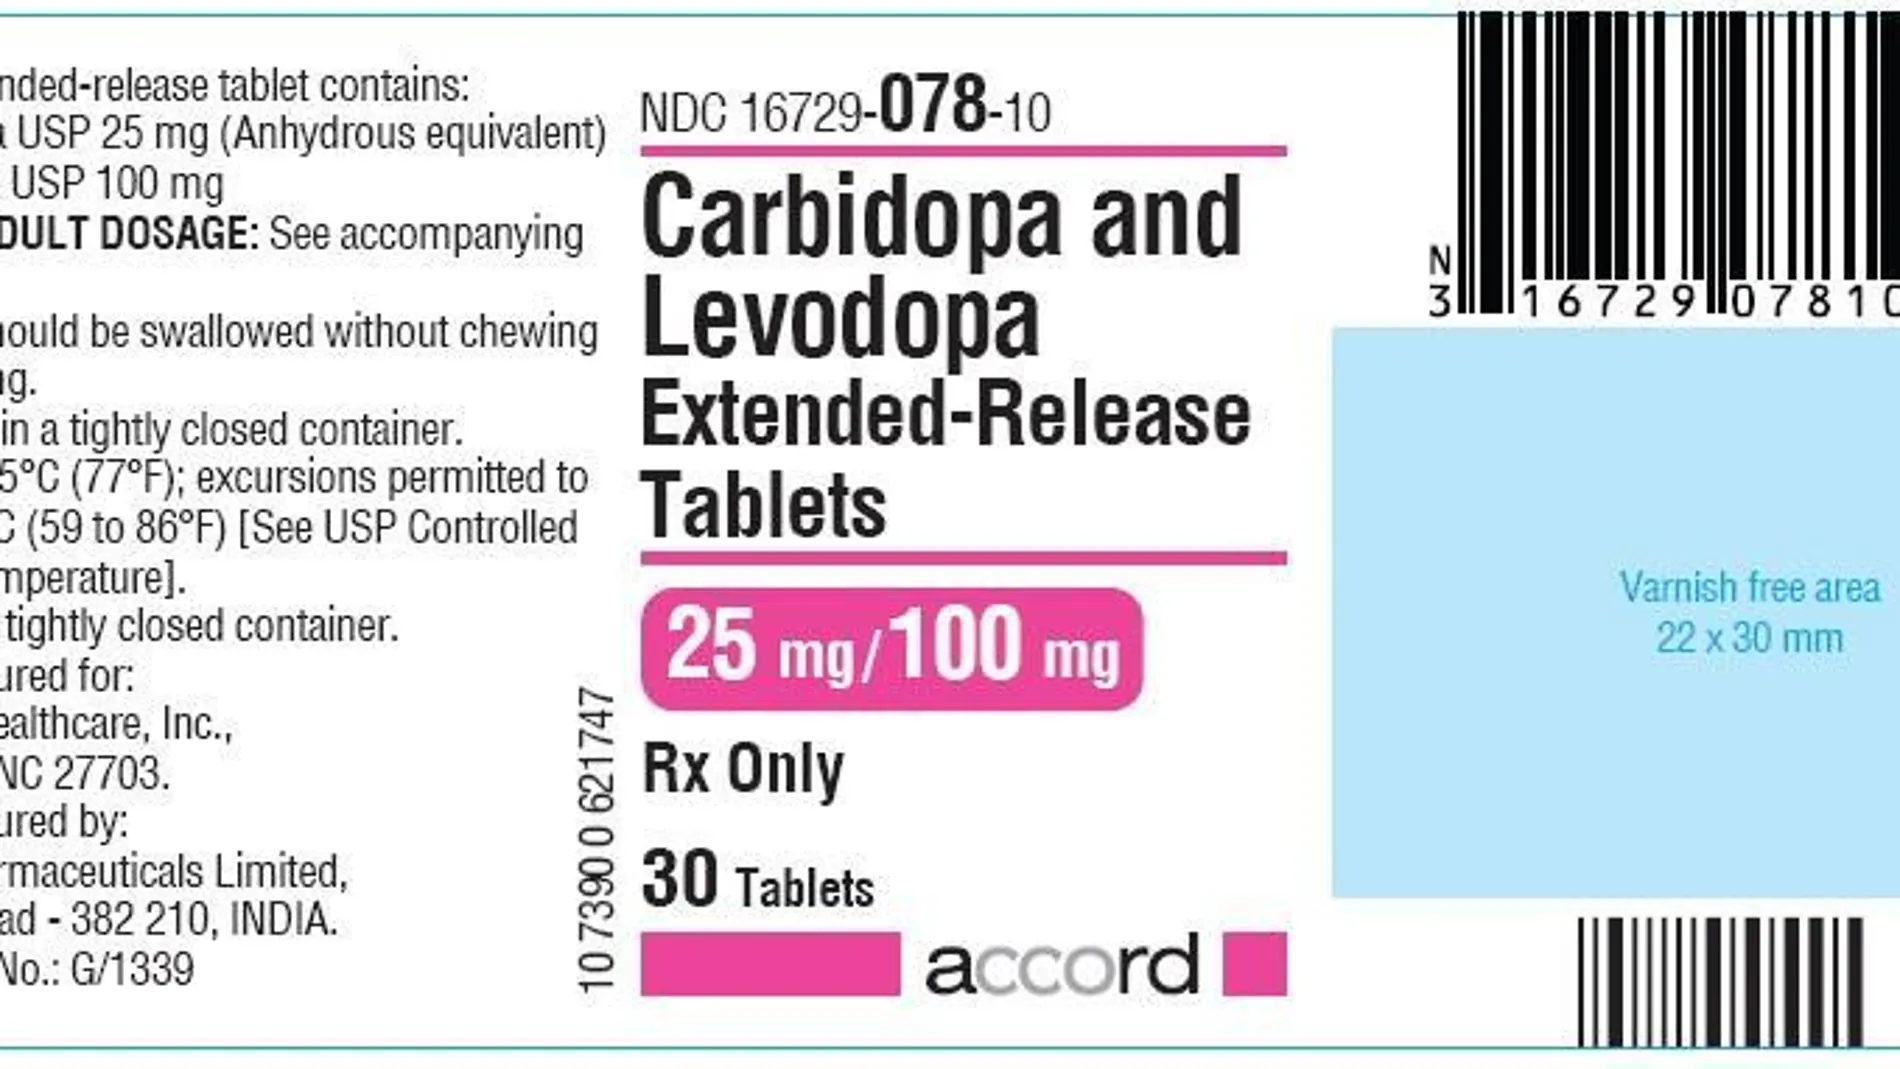 El medicamento Cardibopa